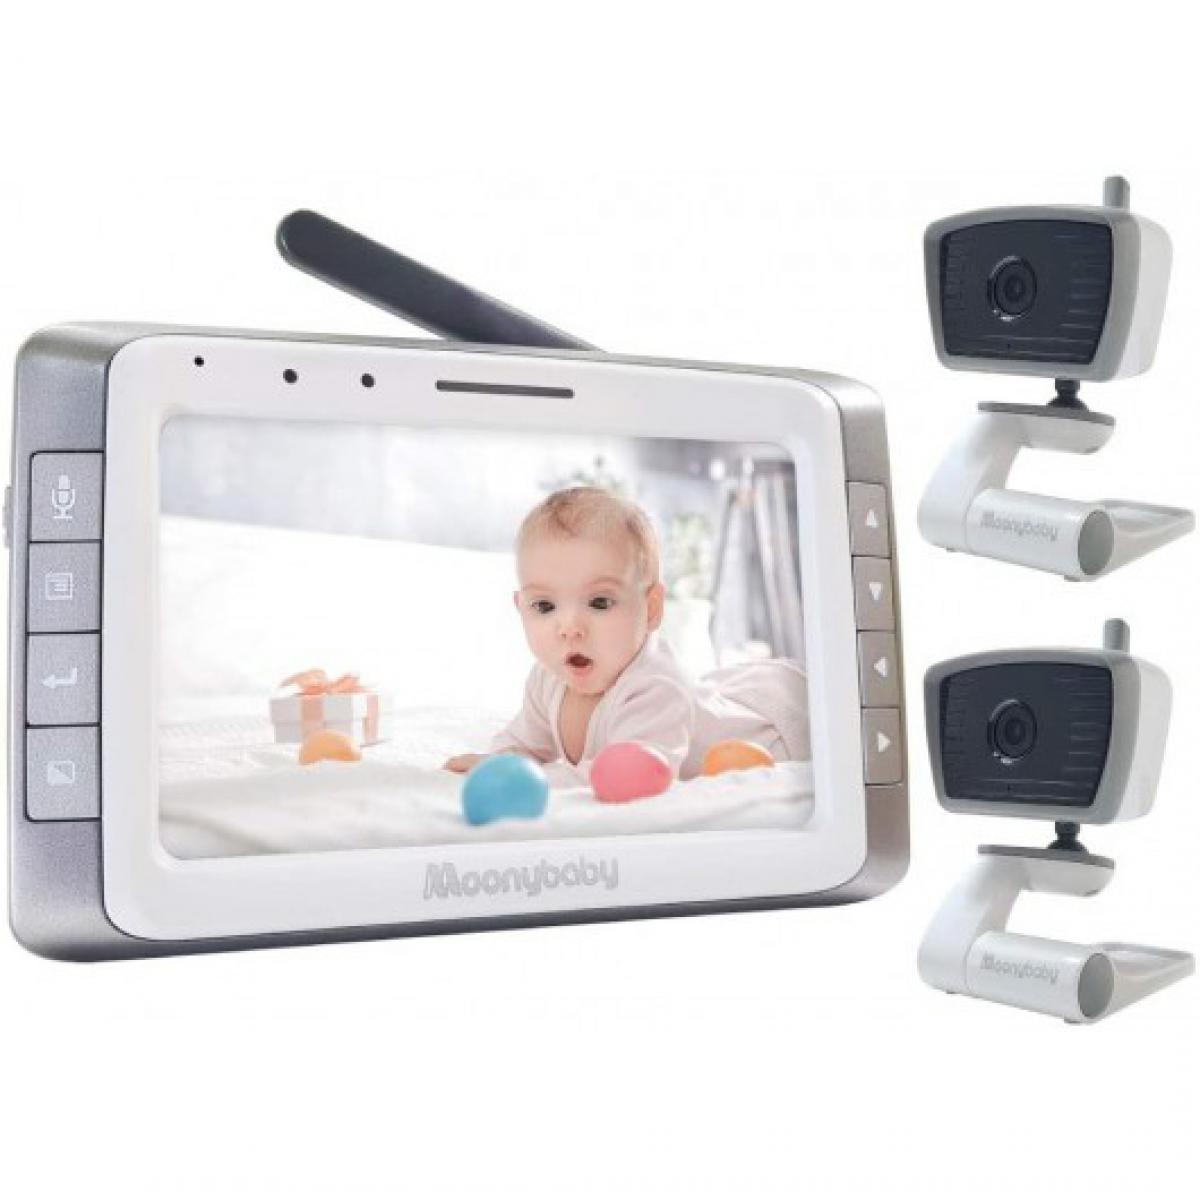 Moonybaby - Moonybaby Trust 50-2, le moniteur pour bébé avec 2 caméras - Caméra de surveillance connectée